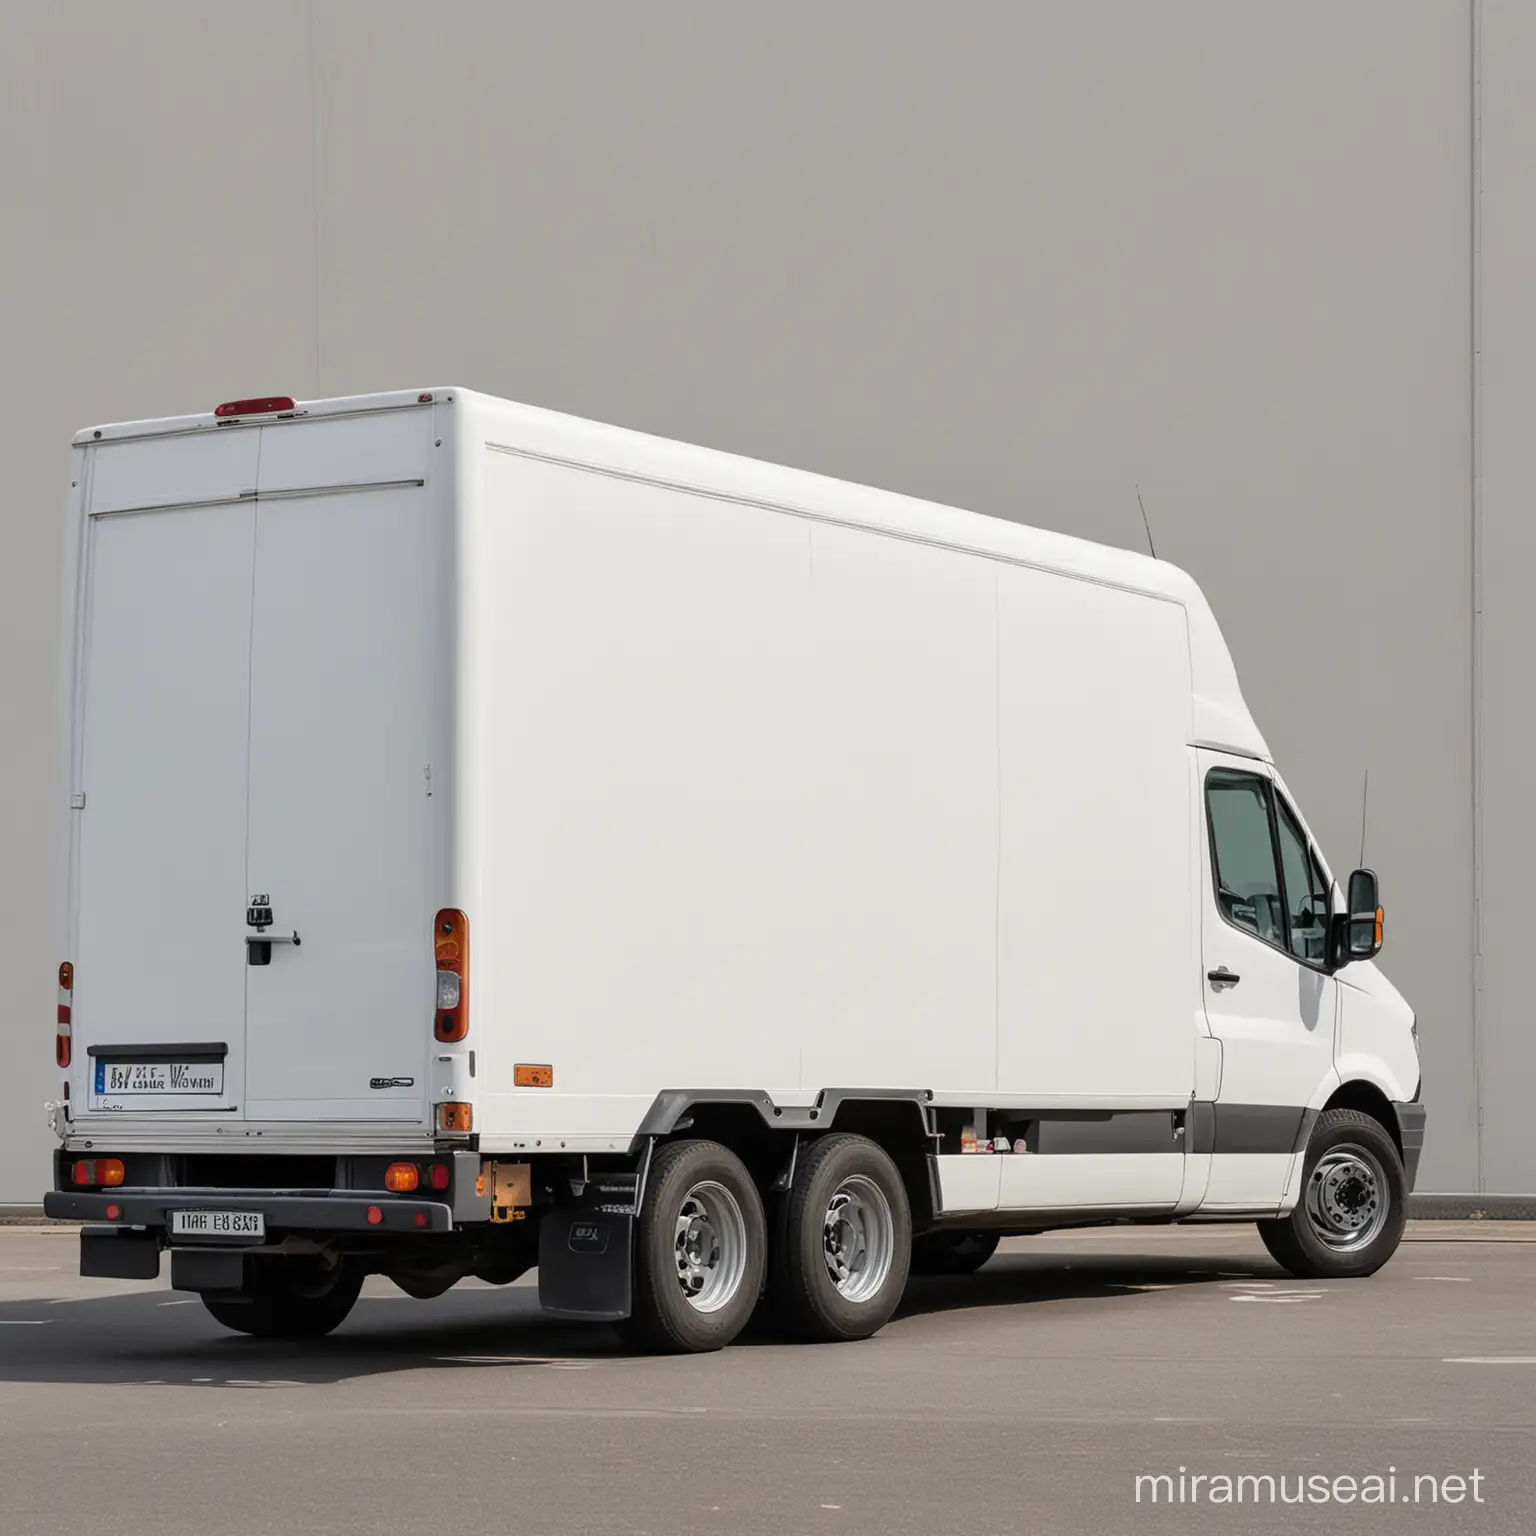 A plain white van logistics van without labels